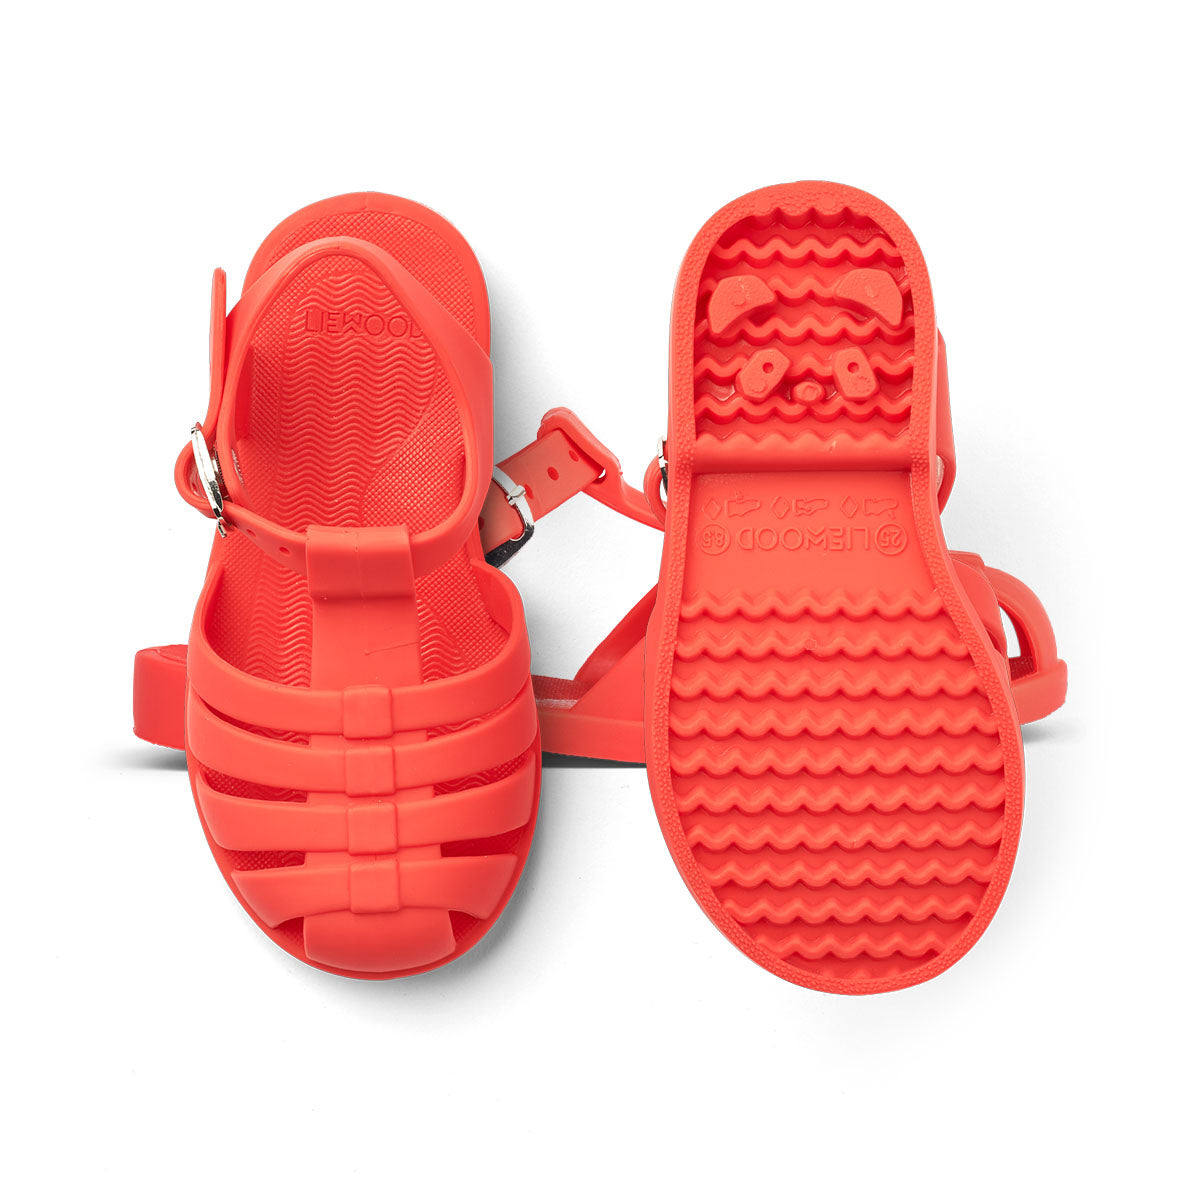 Ben je op zoek naar praktische én hippe waterschoenen? Dan zijn deze bre sandalen van Liewood in de kleur apple red een goede keus! Dankzij het flexibele materiaal en de verstelbare bandjes zijn deze rode waterschoentjes perfect voor op het strand of aan het water en heel comfortabel voor je kind. VanZus